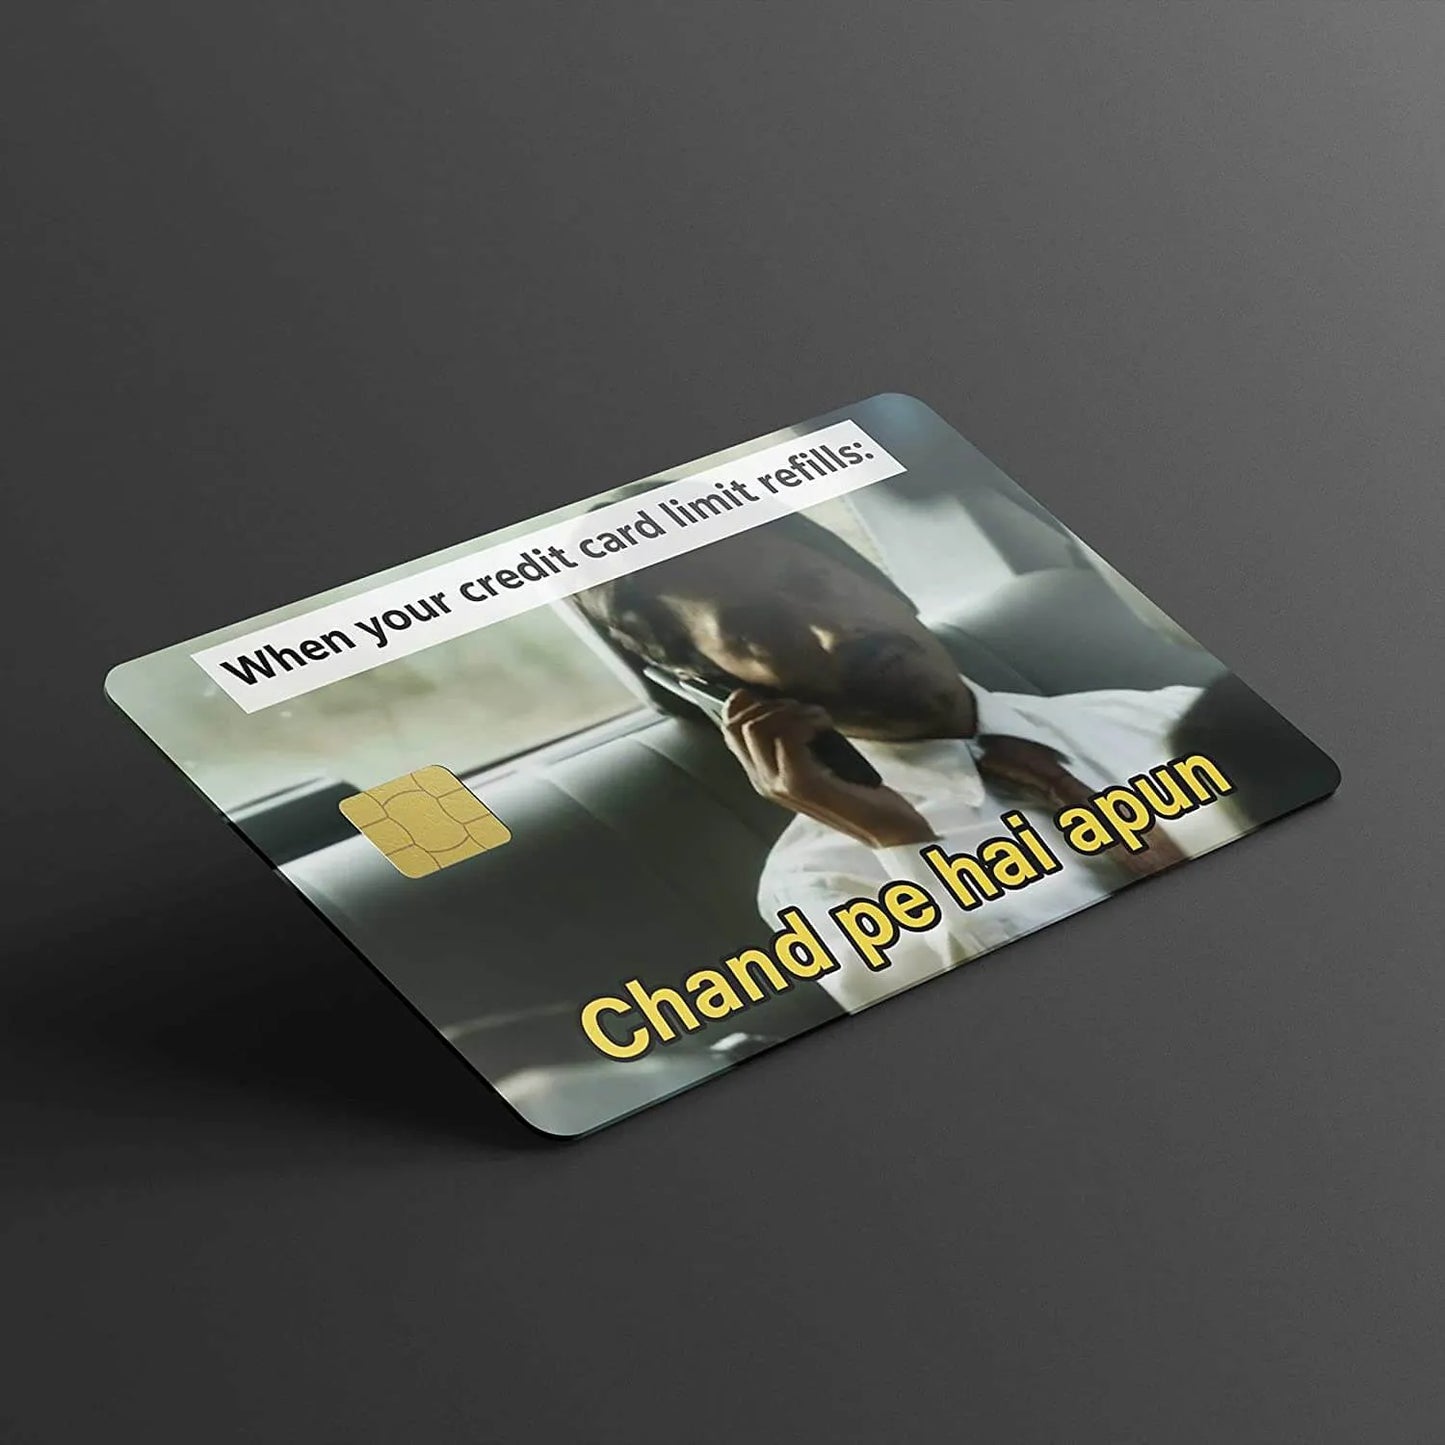 Chand Pe hai Apun credit card skins